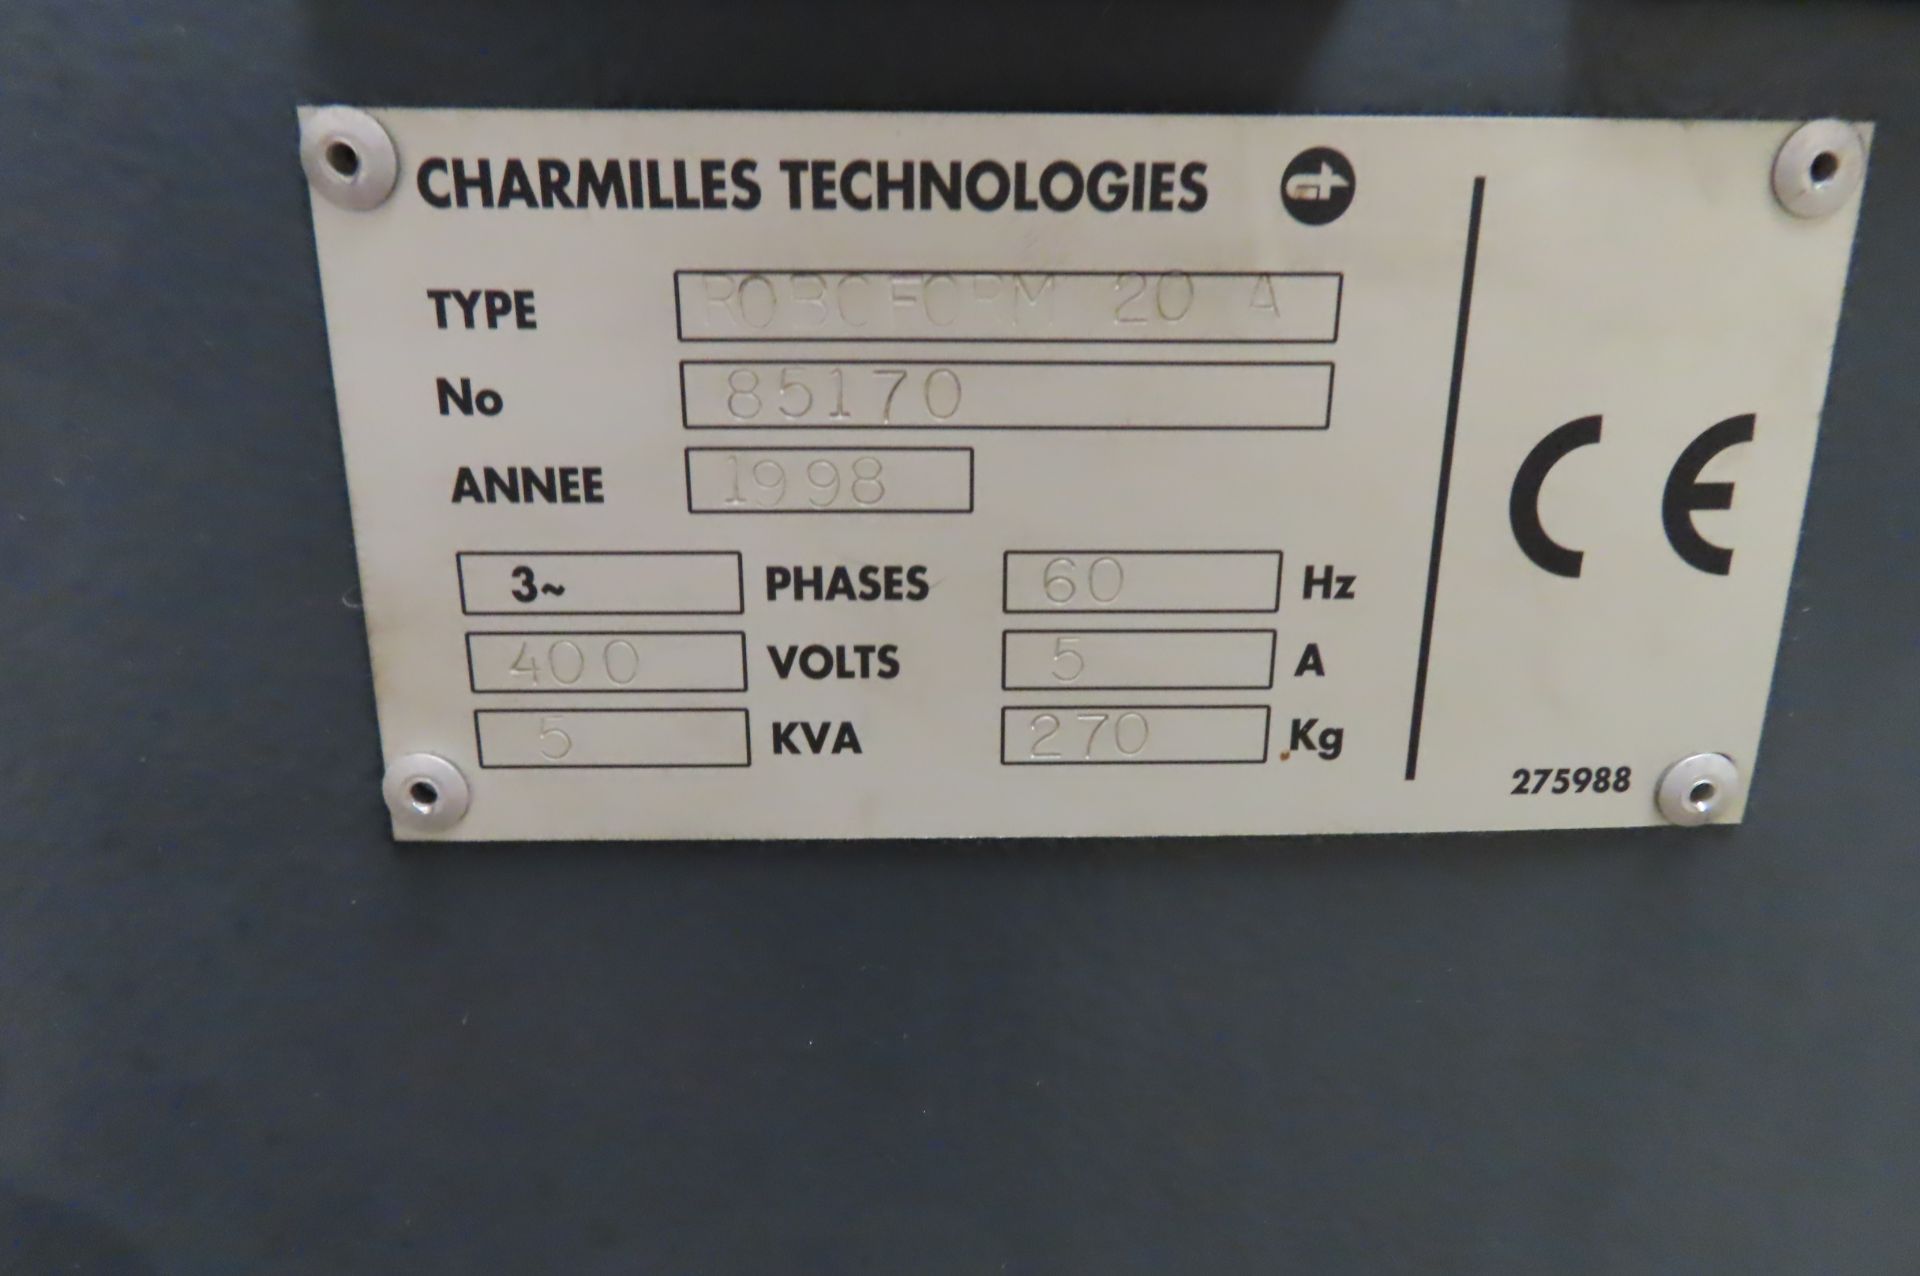 1998 CHARMILLES ROBOFORM 20A CNC DIE SINK EDM, S/N 220142, CHARMILLES POWER - Image 6 of 8